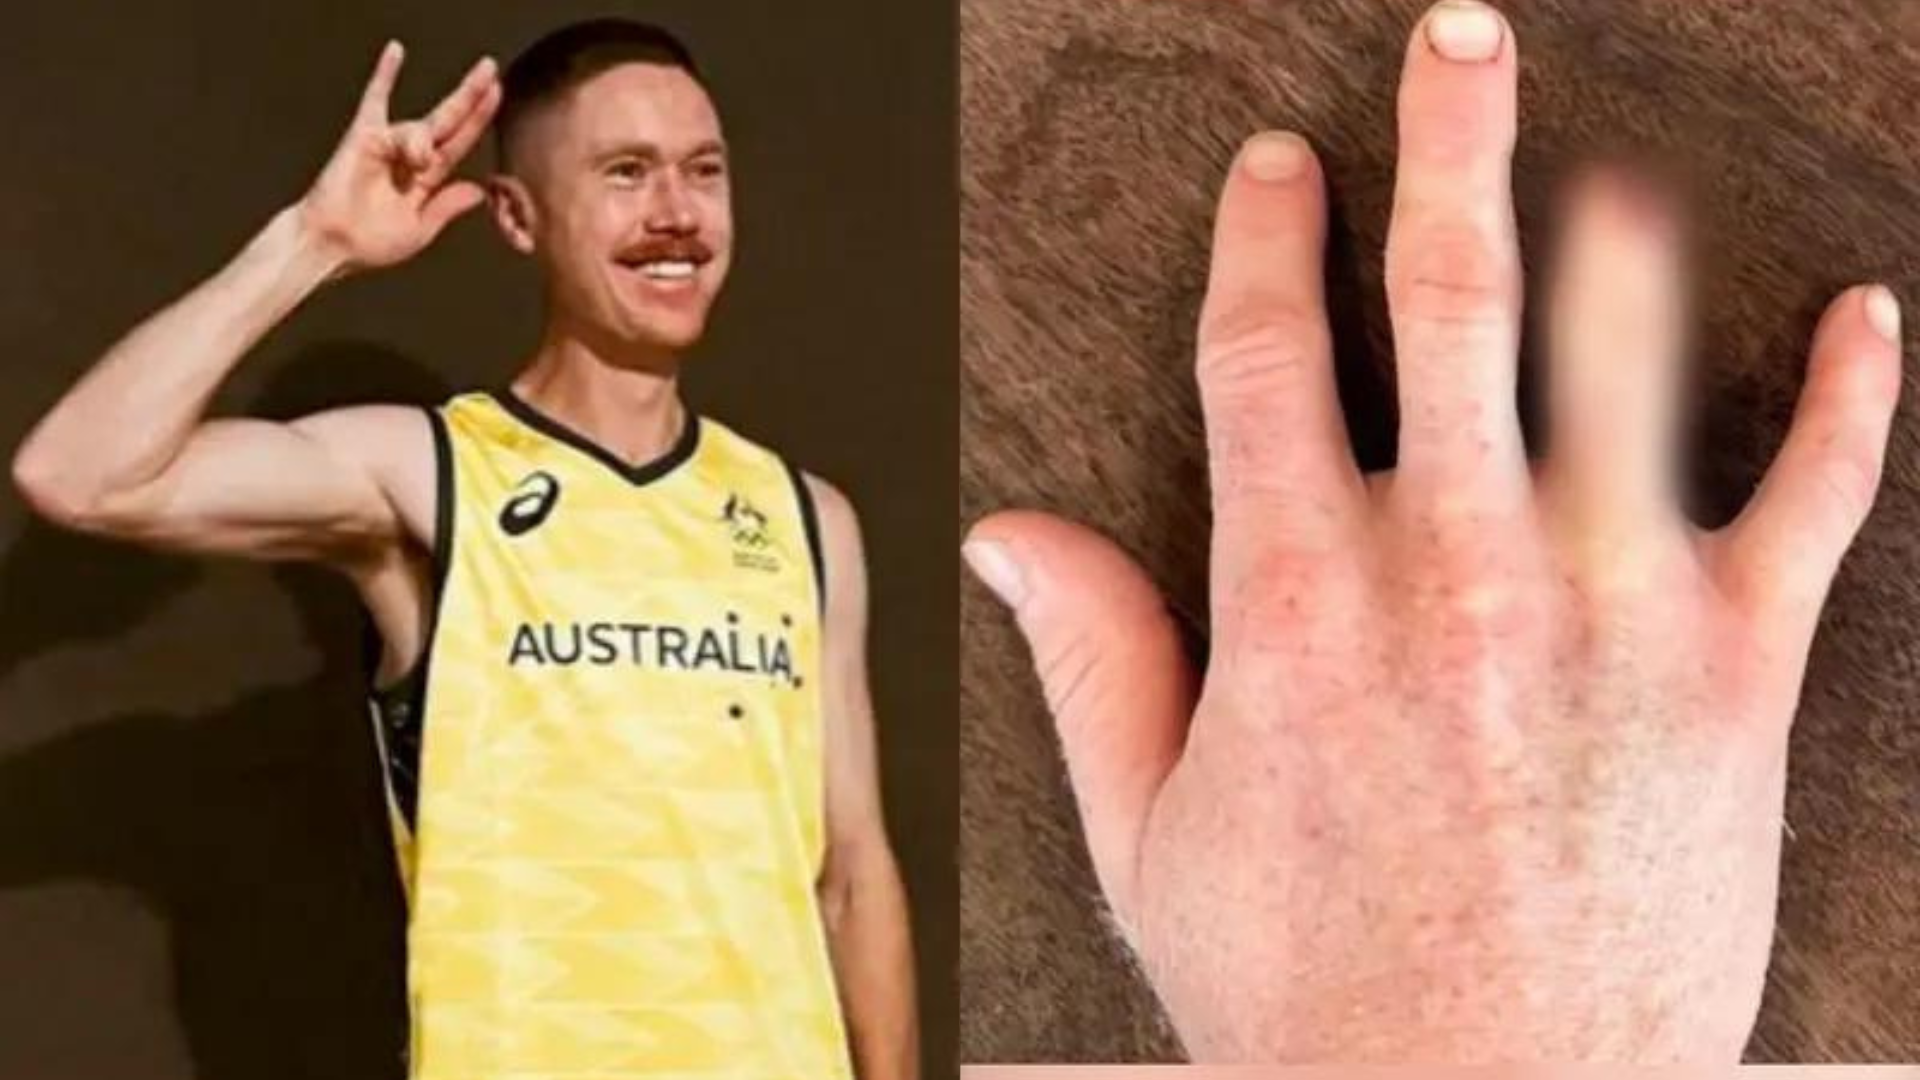 Decisión extrema: para no perderse los Juegos Olímpicos por una fractura en su dedo, deportista australiano decide amputárselo